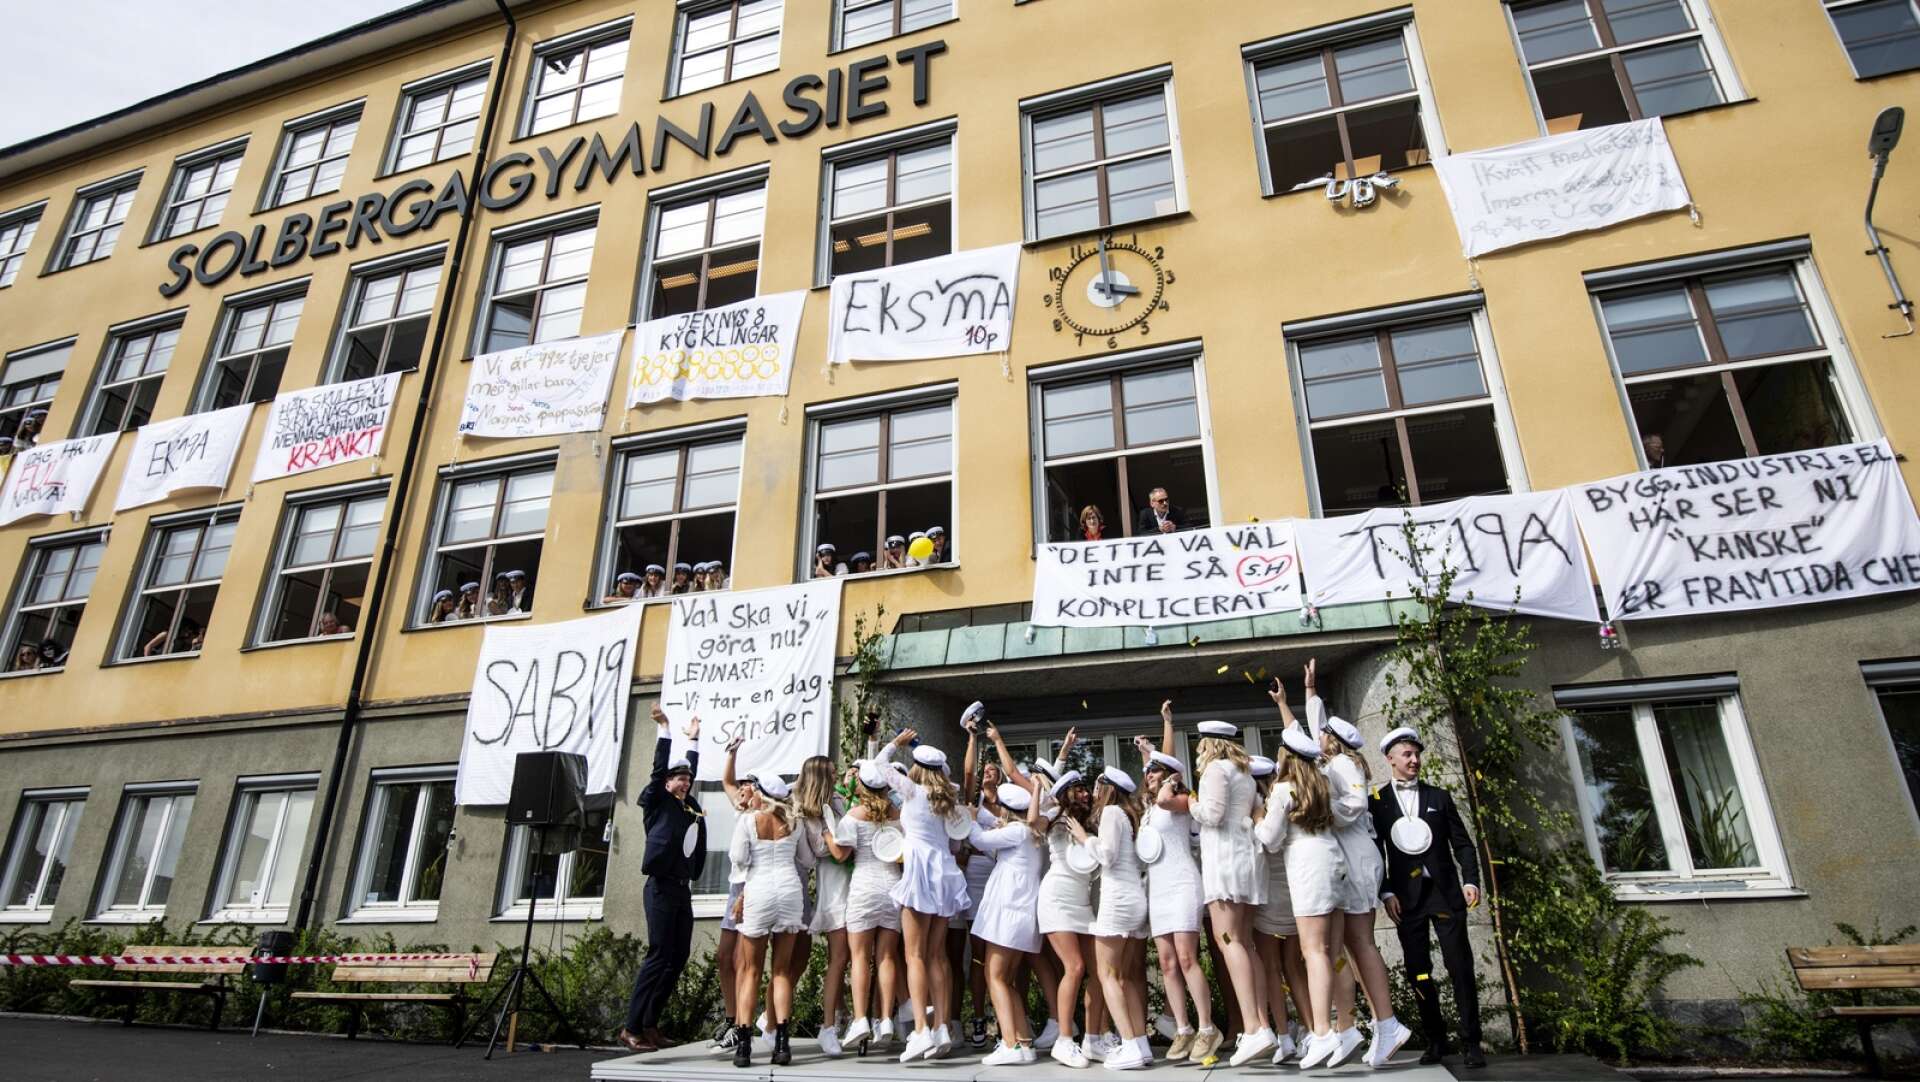 Studentutspring på Solbergagymnasiet i Arvika.